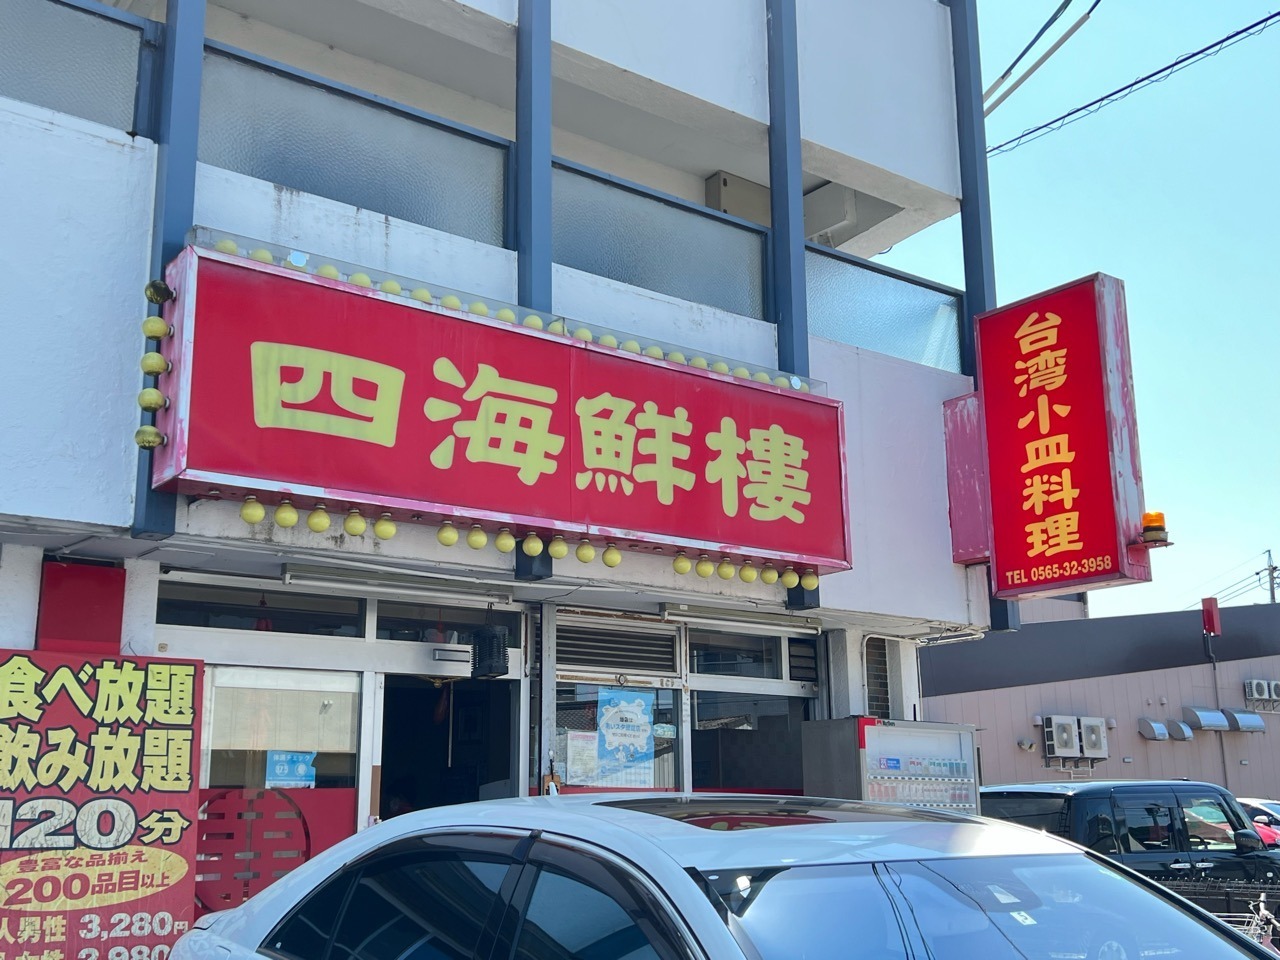 「台湾料理 四海鮮樓」